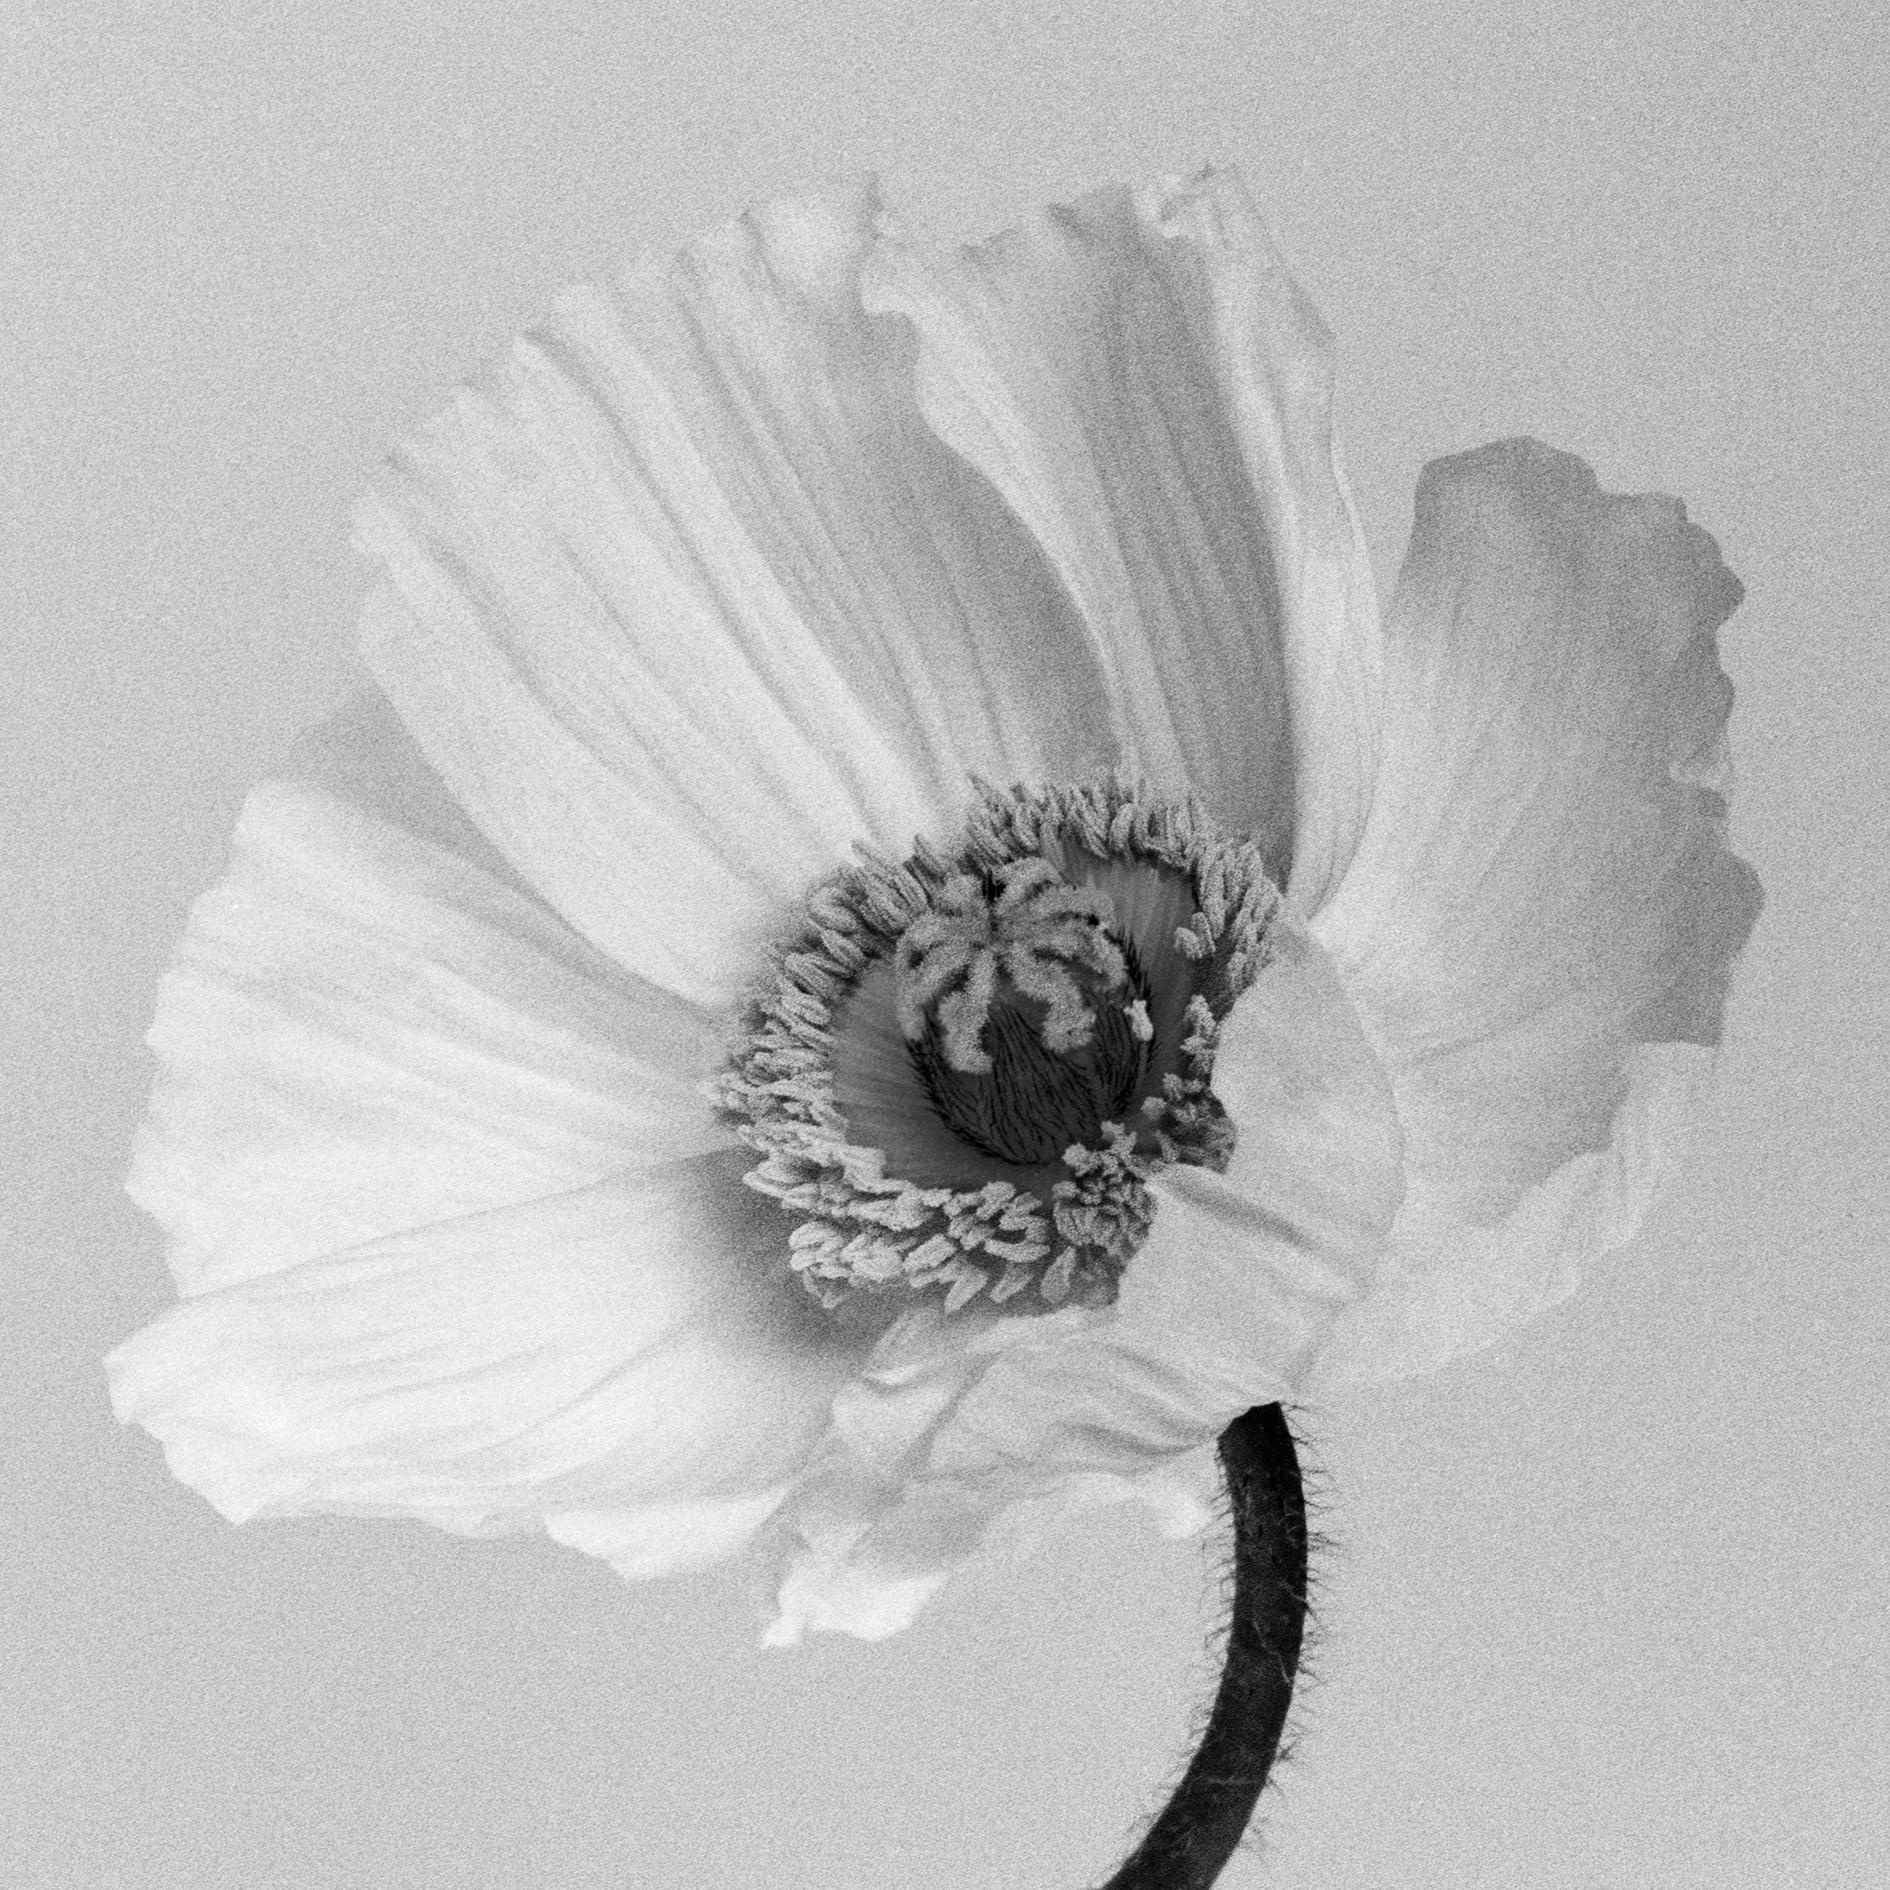 Ugne Pouwell Black and White Photograph – Poppy No.2 – Analogue Schwarz-Weiß-Blumenfotografie in Schwarz-Weiß, Auflage von 10 Stück